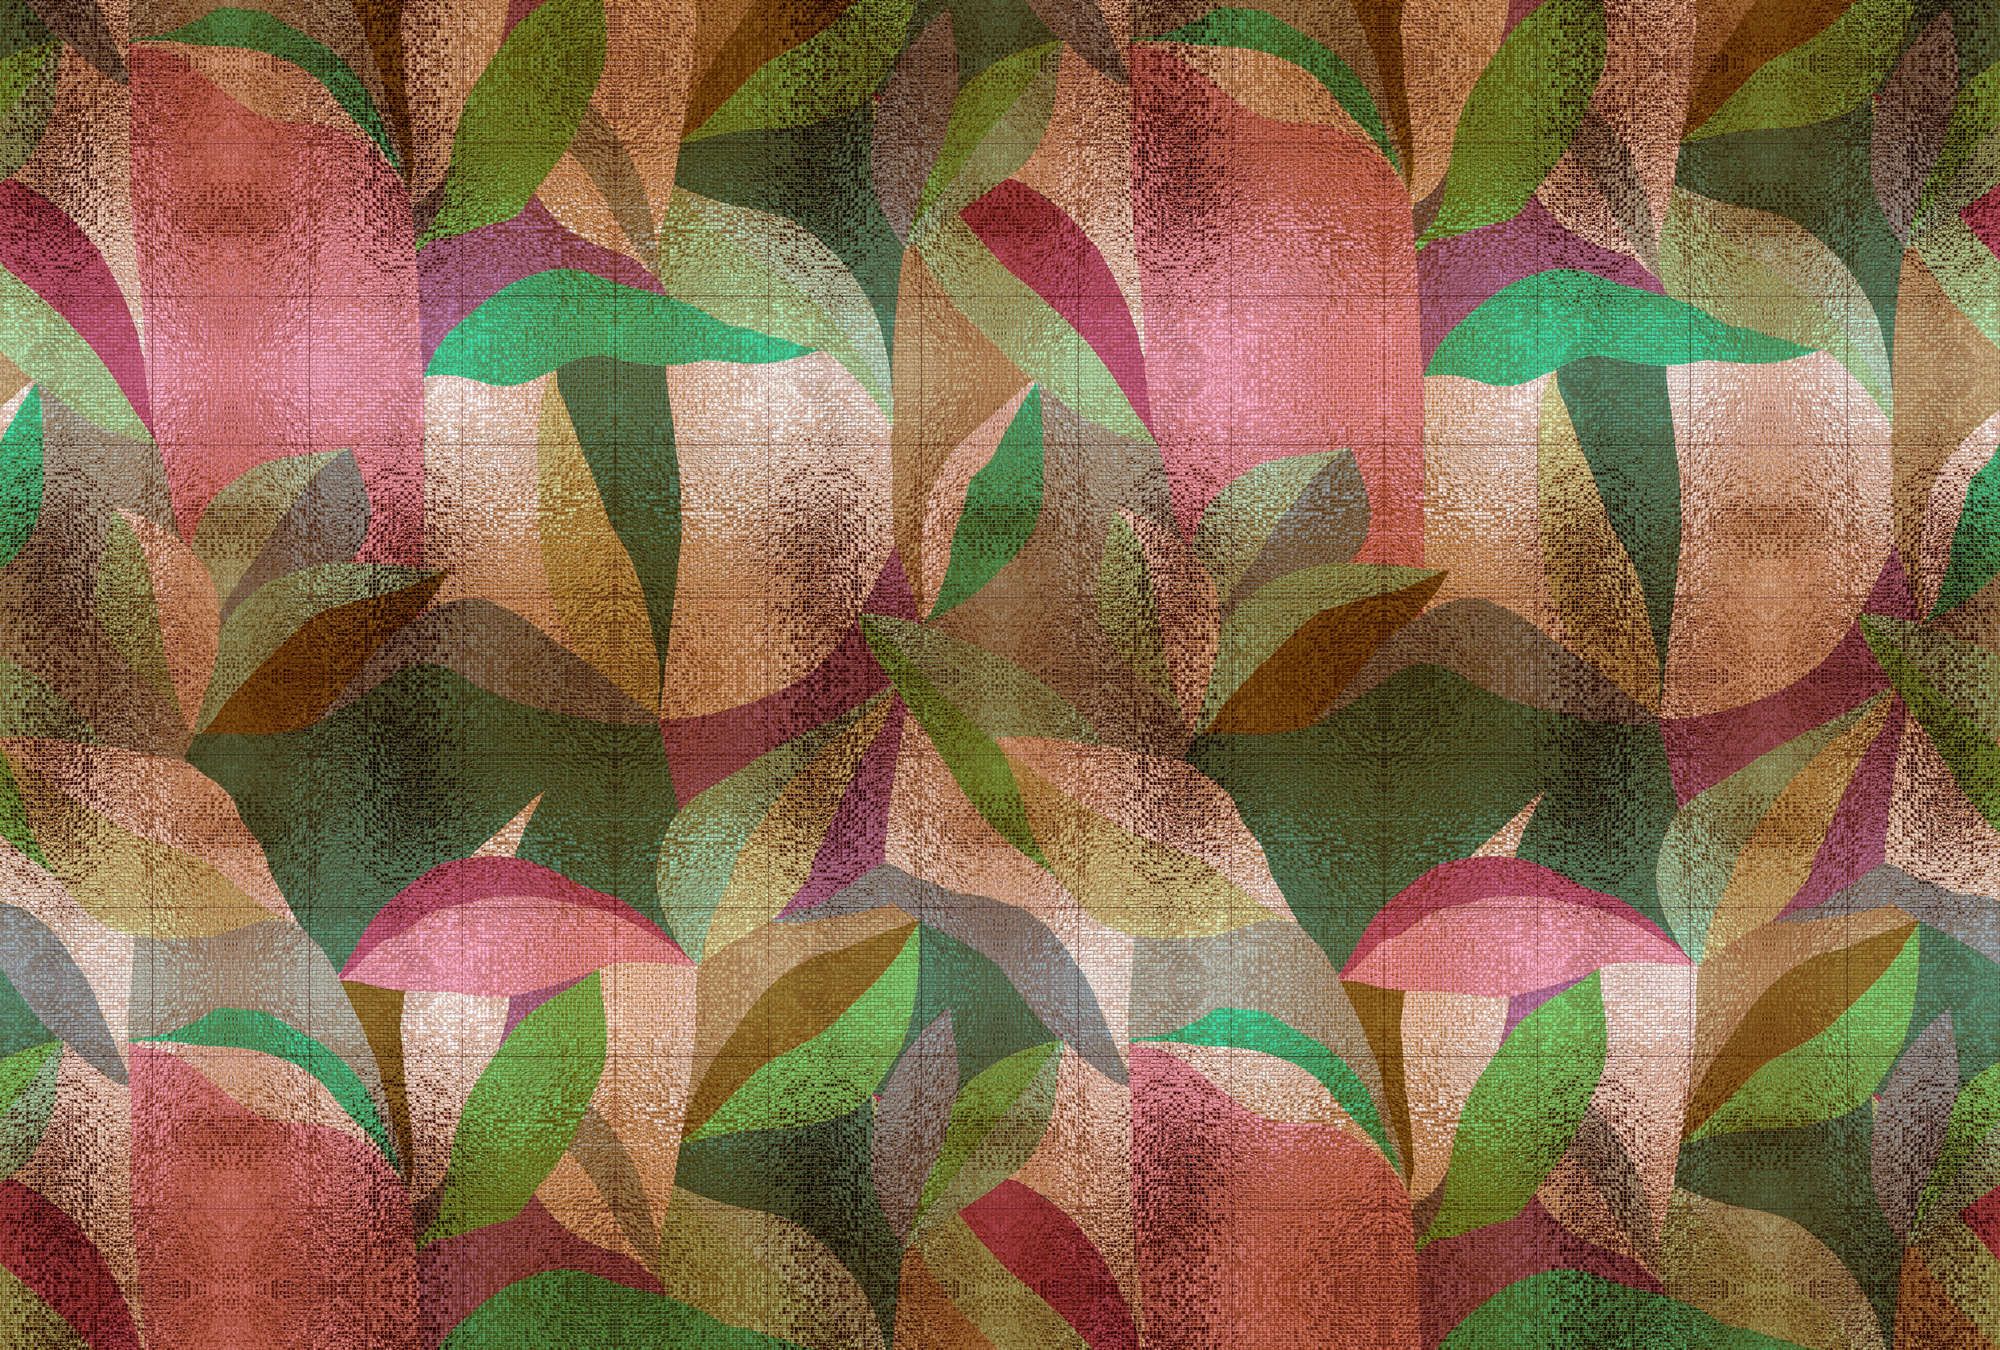             Fotomural »grandezza« - Diseño abstracto de hojas de colores con estructura de mosaico - Material no tejido de alta calidad, liso y ligeramente brillante
        